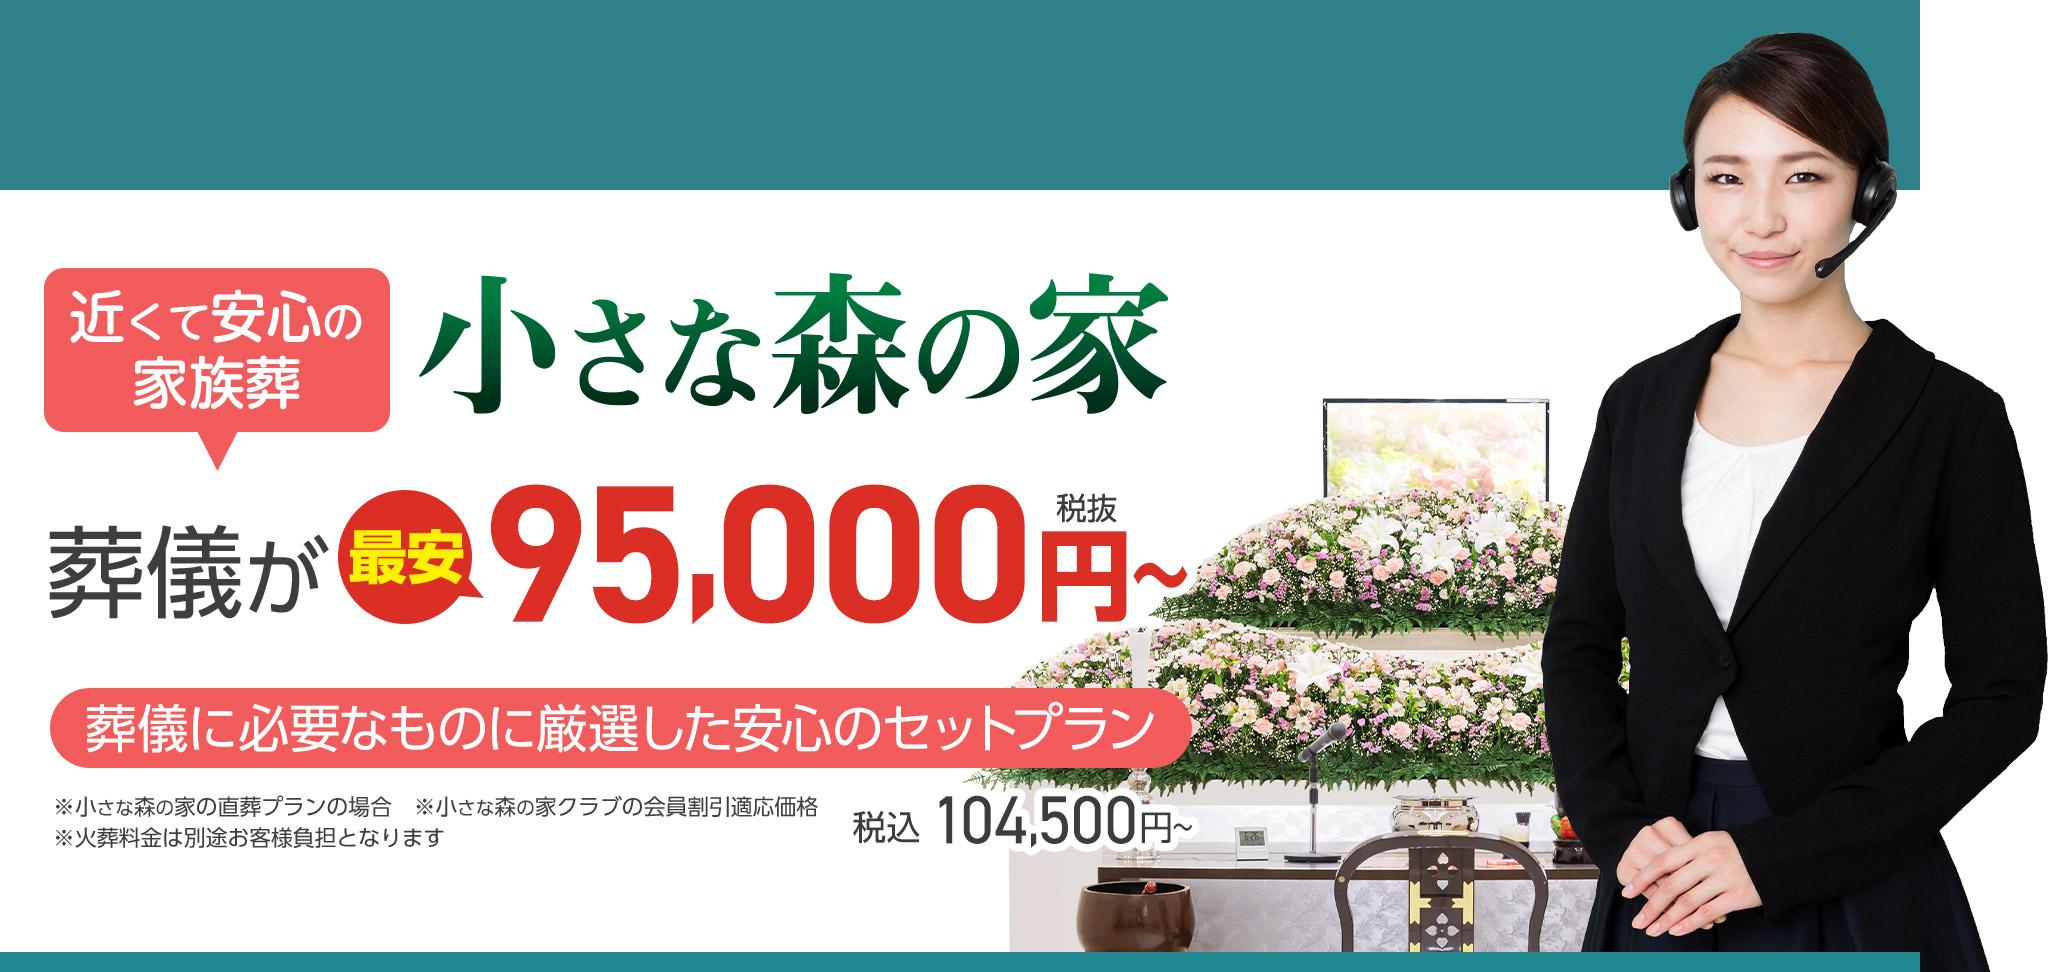 佐倉市で家族葬をお探しなら小さな森の家 近くて安心の葬儀・家族葬がWEB限定税抜95,000円